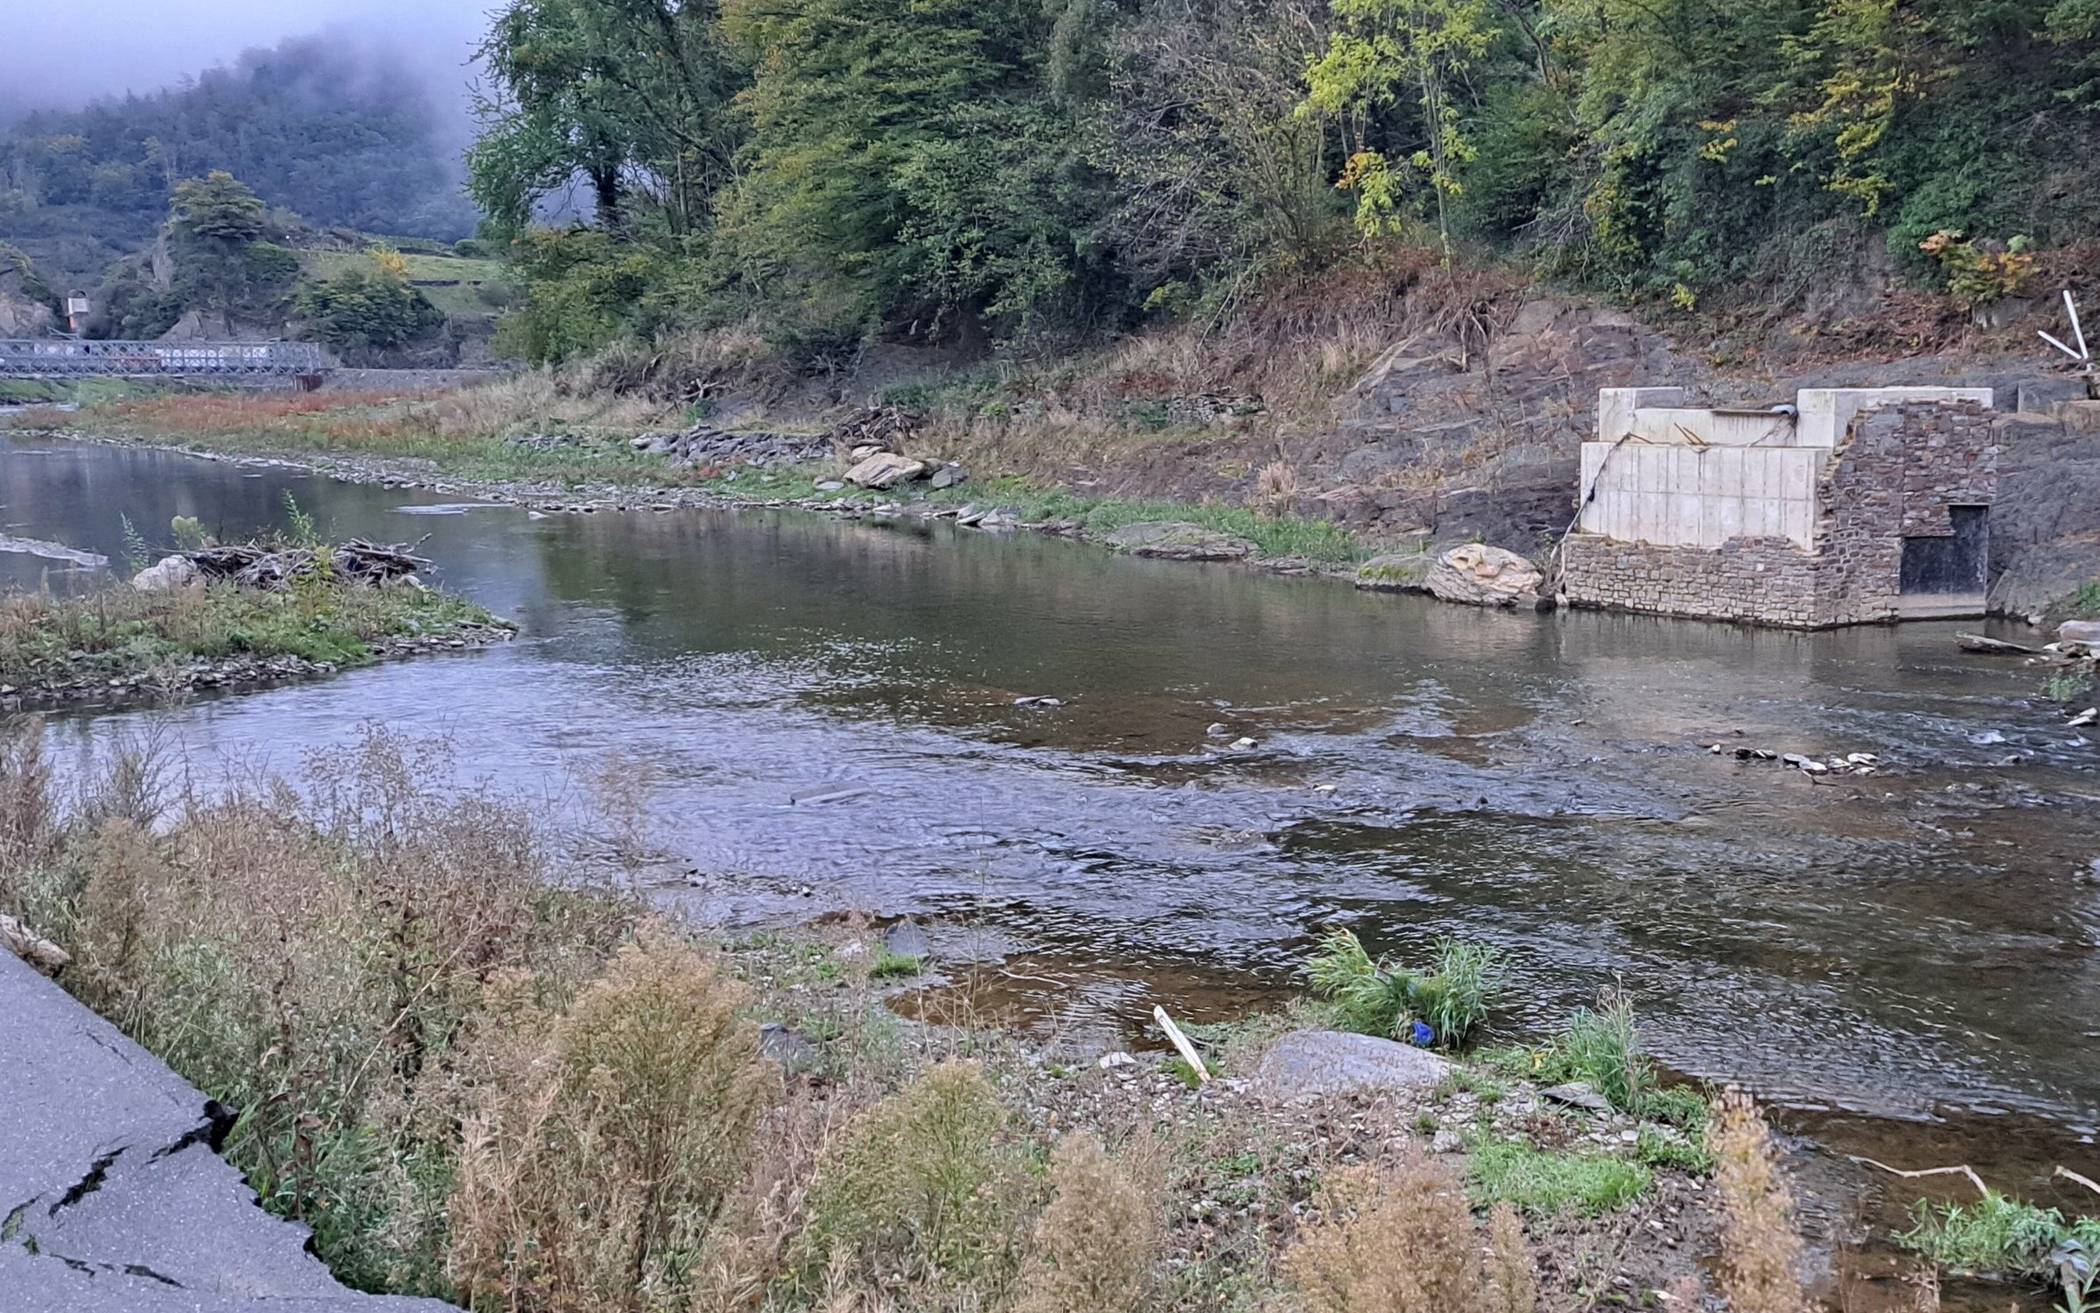  Ein aktuelles Foto: Die von der Flut mitgerissene Brücke fehlt weiterhin, ebenso wie die Uferbepflanzung. 